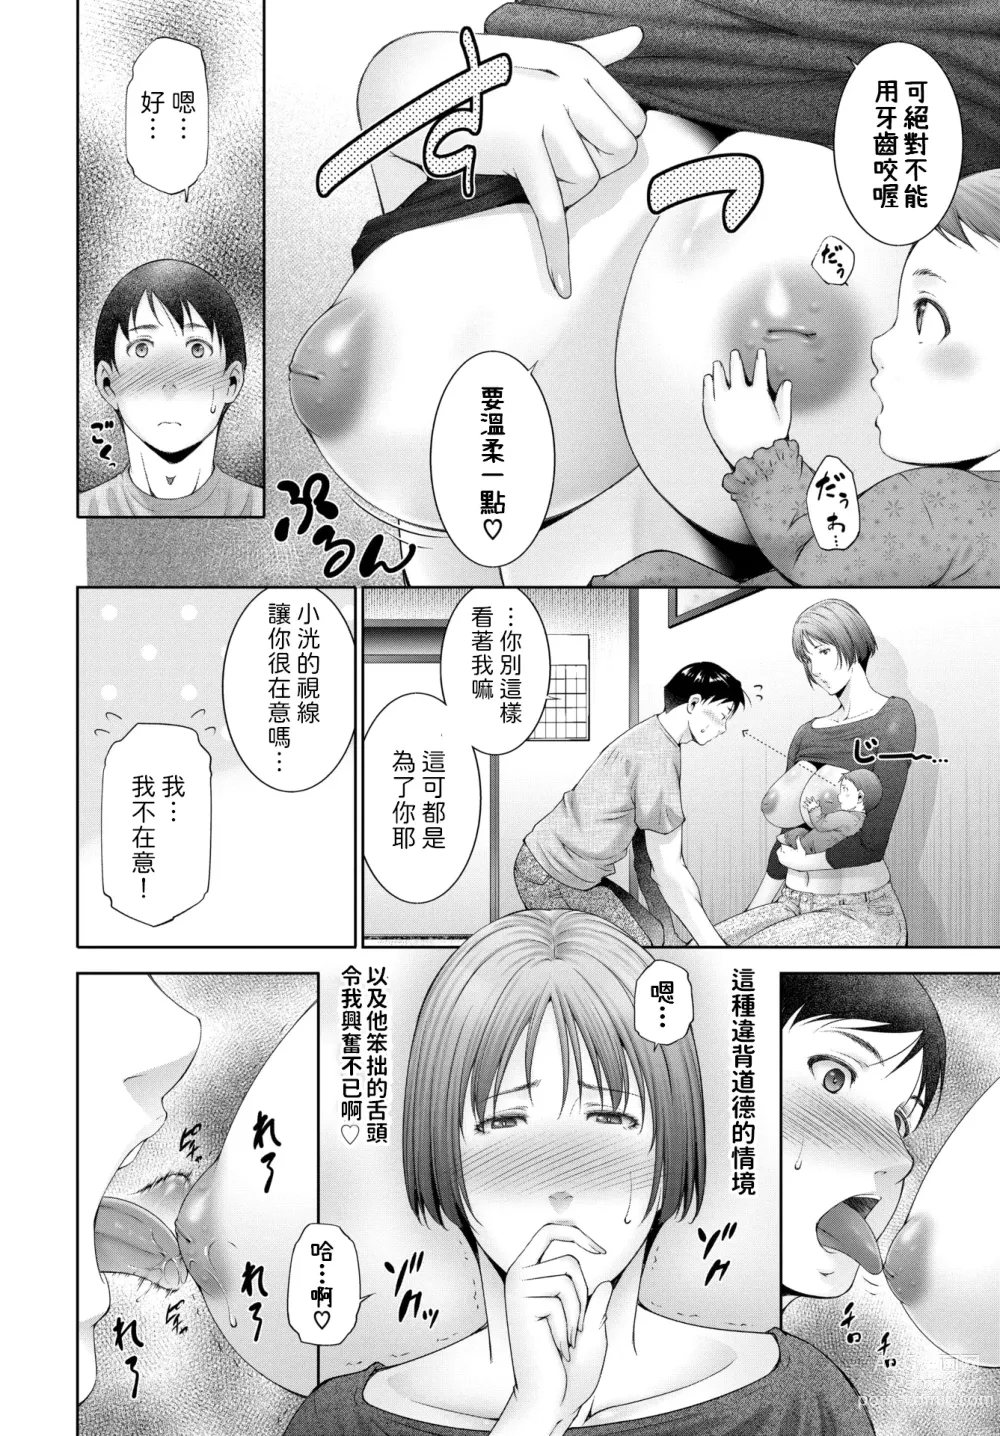 Page 4 of manga Milk o ageru - Give milk